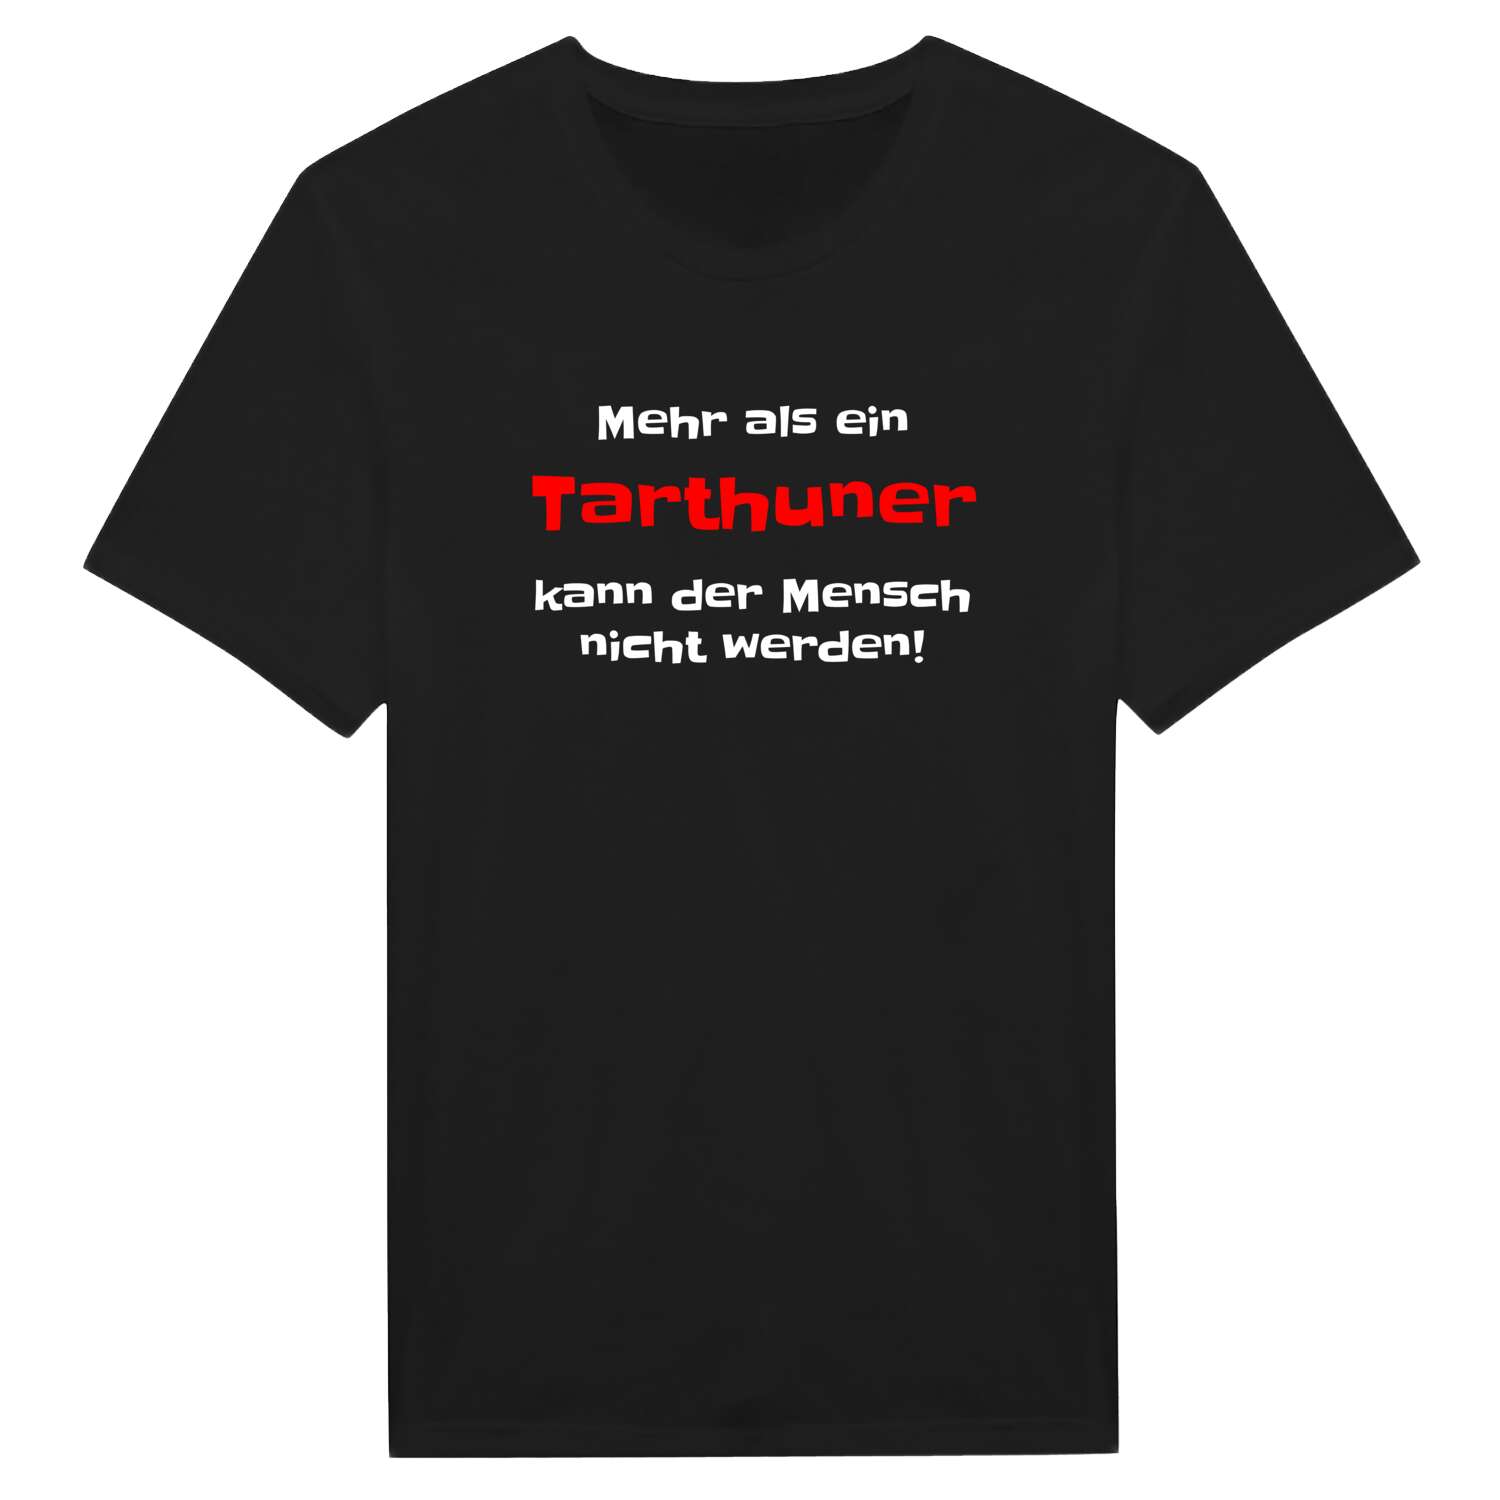 Tarthun T-Shirt »Mehr als ein«